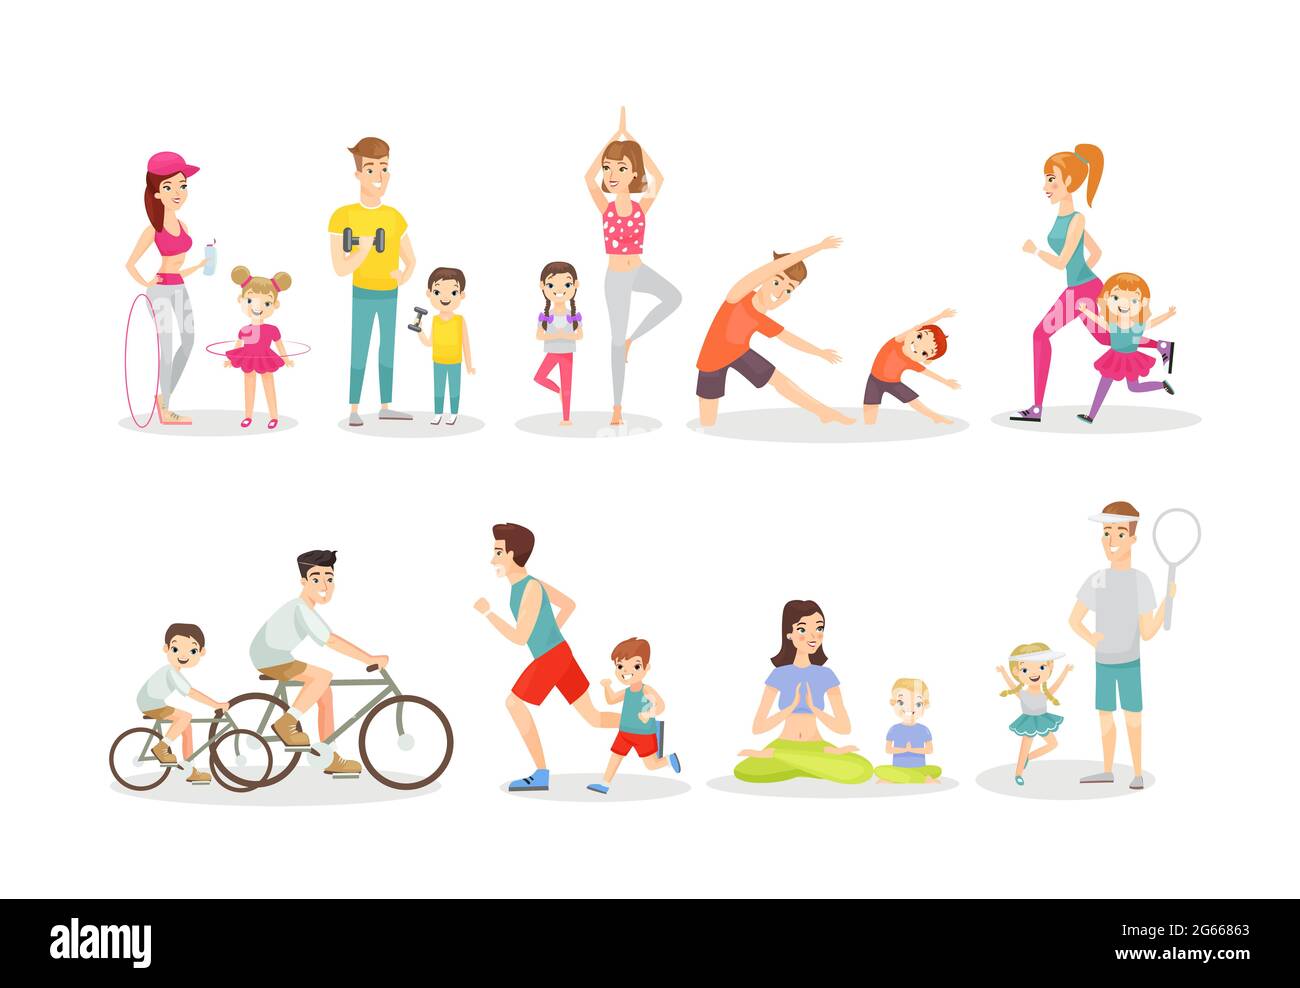 Set mit flachen Vektorgrafiken für sportliche Aktivitäten. Aktive Freizeit, Übungen, sportlicher Lebensstil. Fitness und Yoga, Radfahren und Laufen. Eltern und Stock Vektor